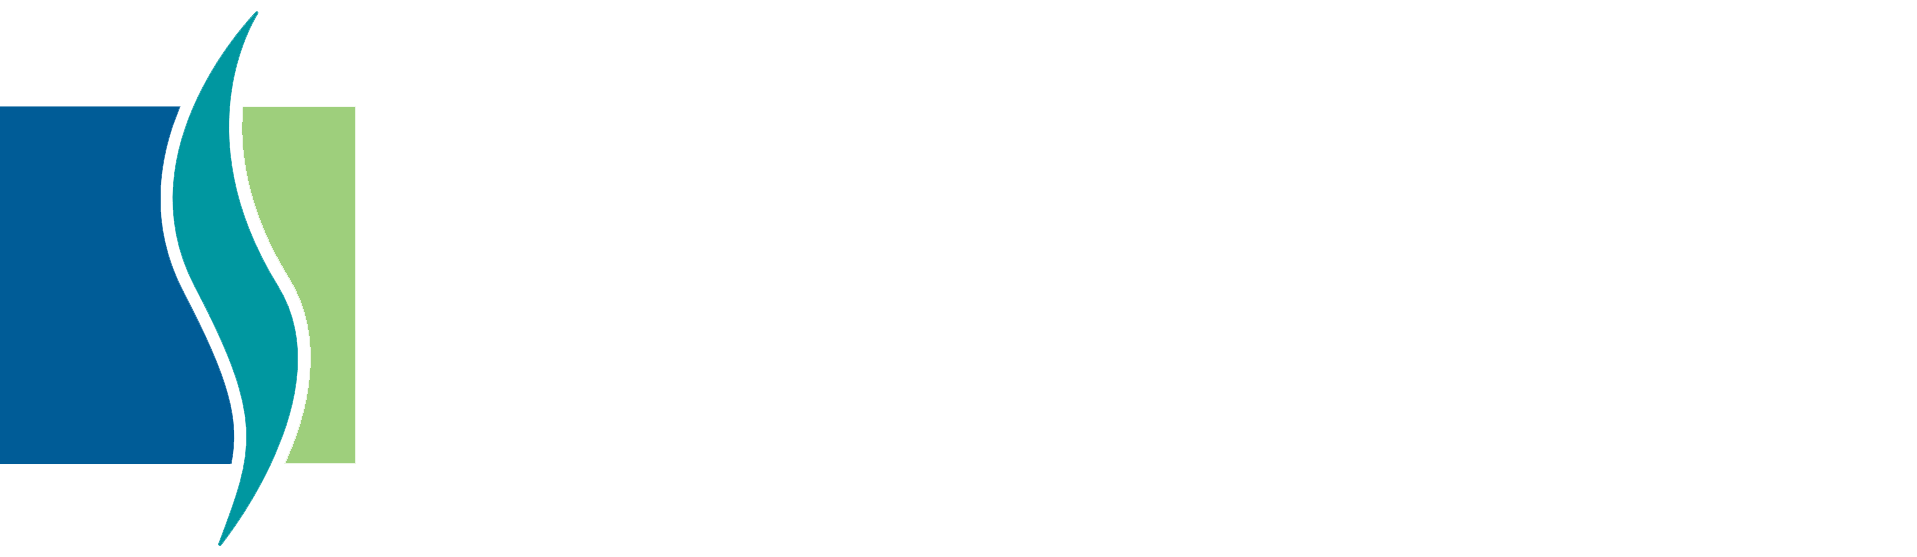 Steve Sato, DDS Dental Excellence Logo